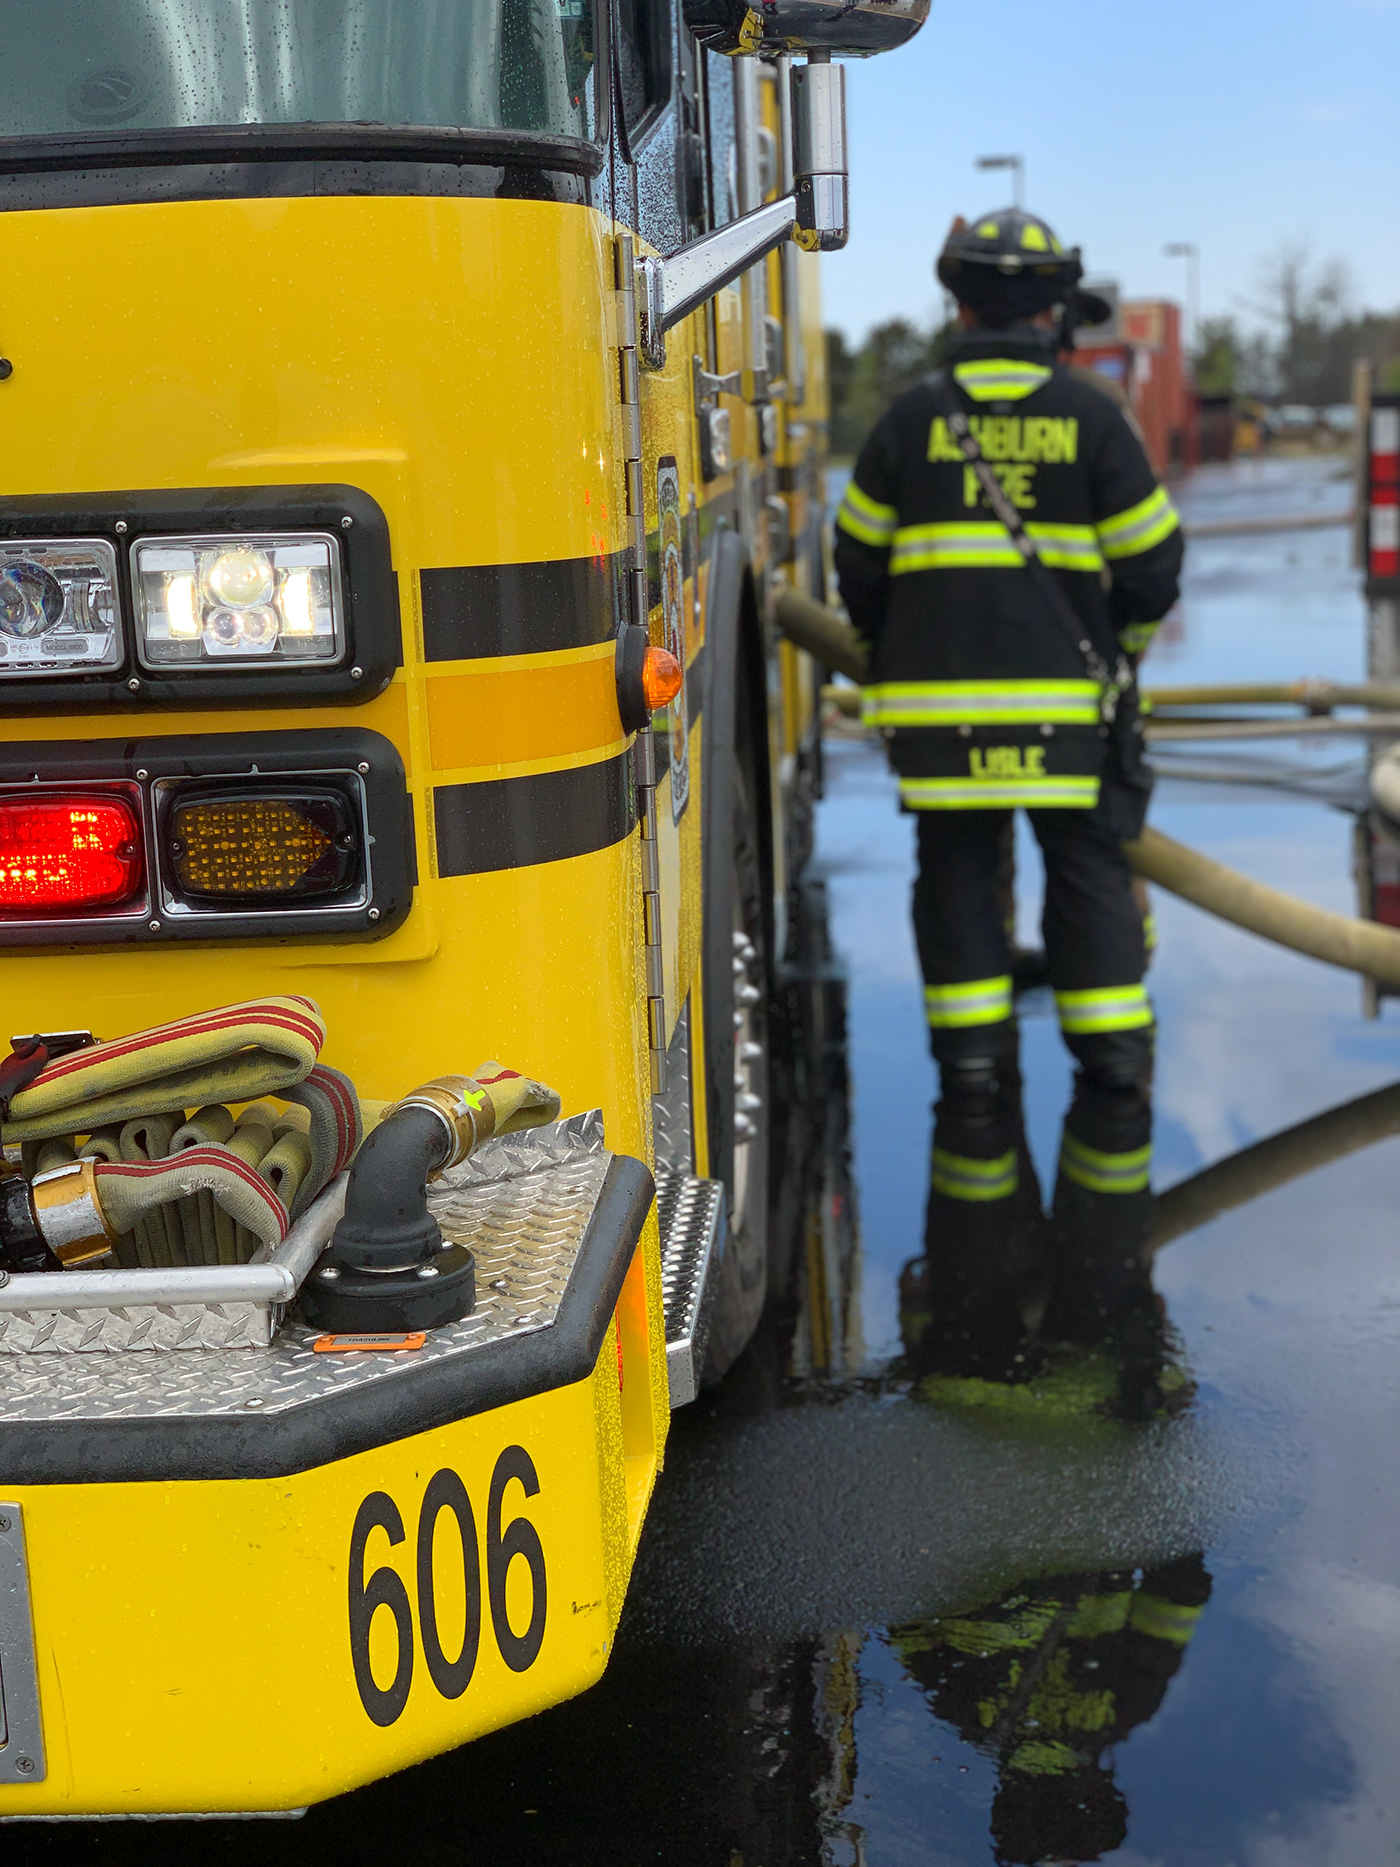 Firefighter fireman firefighting Firetruck rescue firefighters water firedepartment hose training center